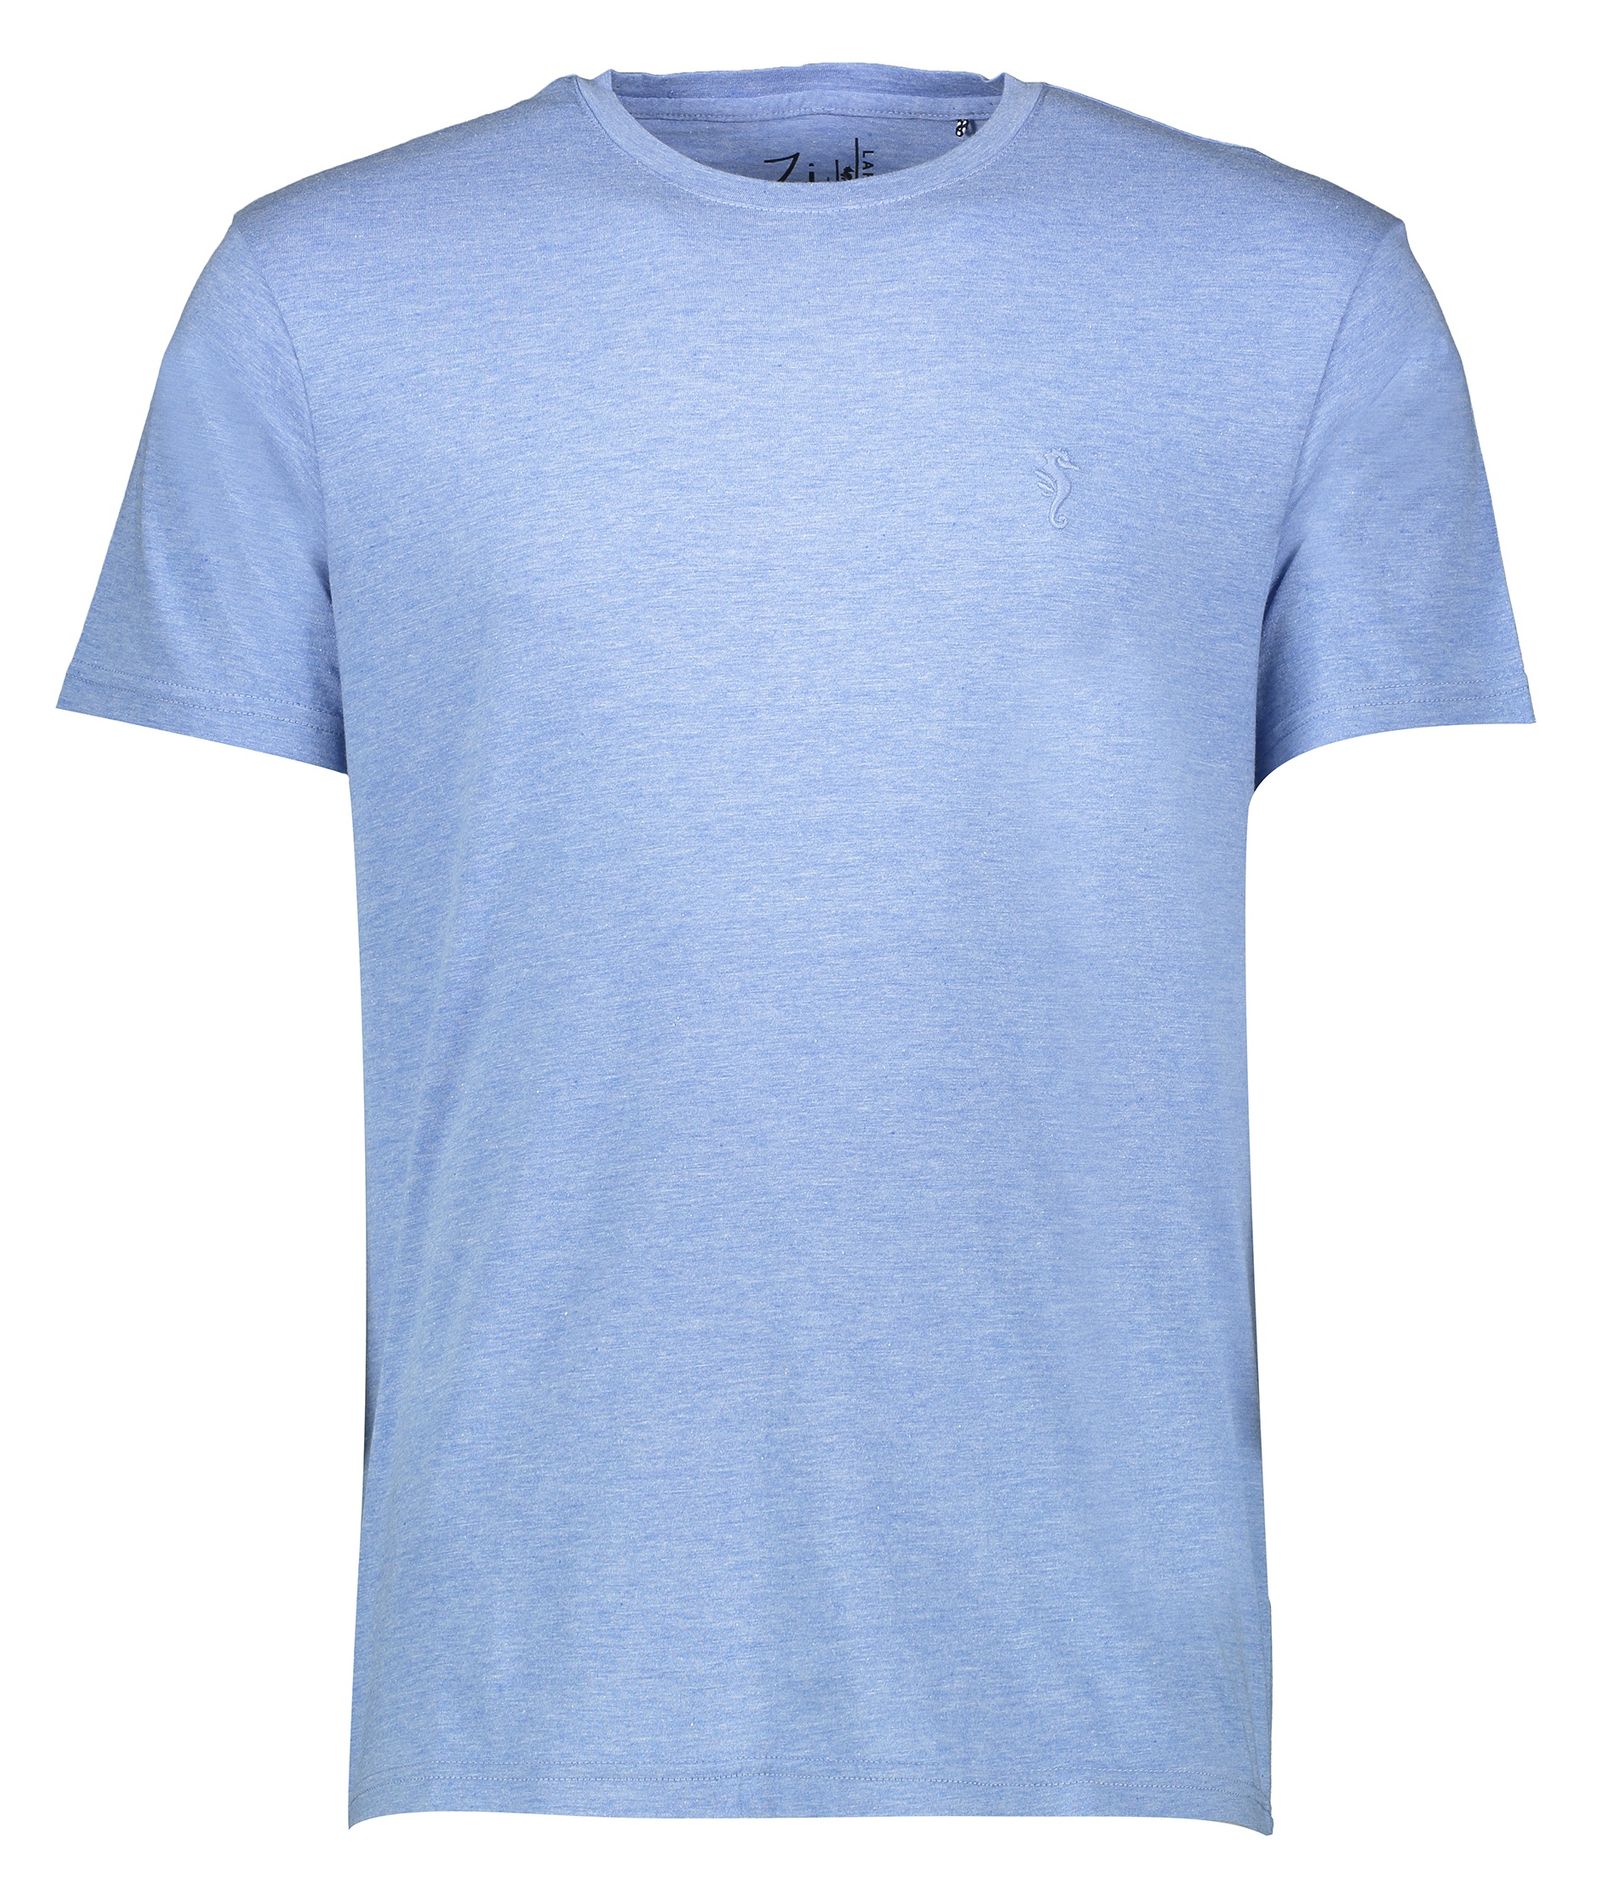 تی شرت مردانه زی سا مدل 153113158 -  - 1